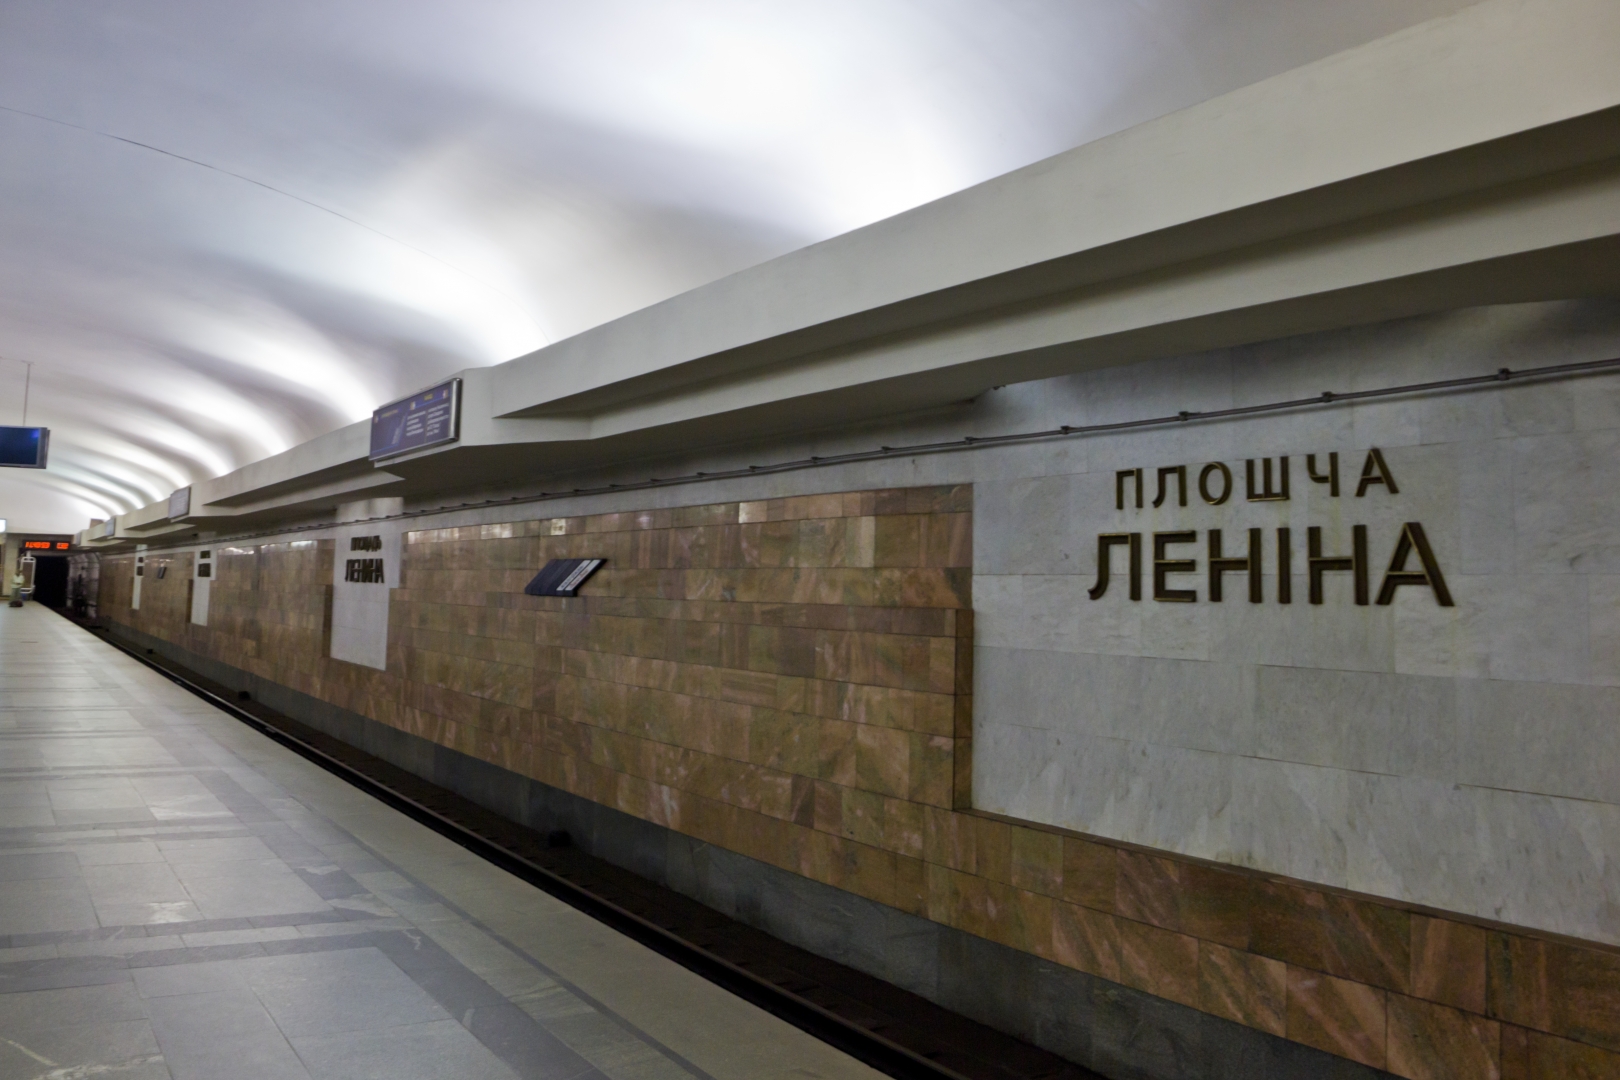 Площадь Ленина (станция метро, Минск)